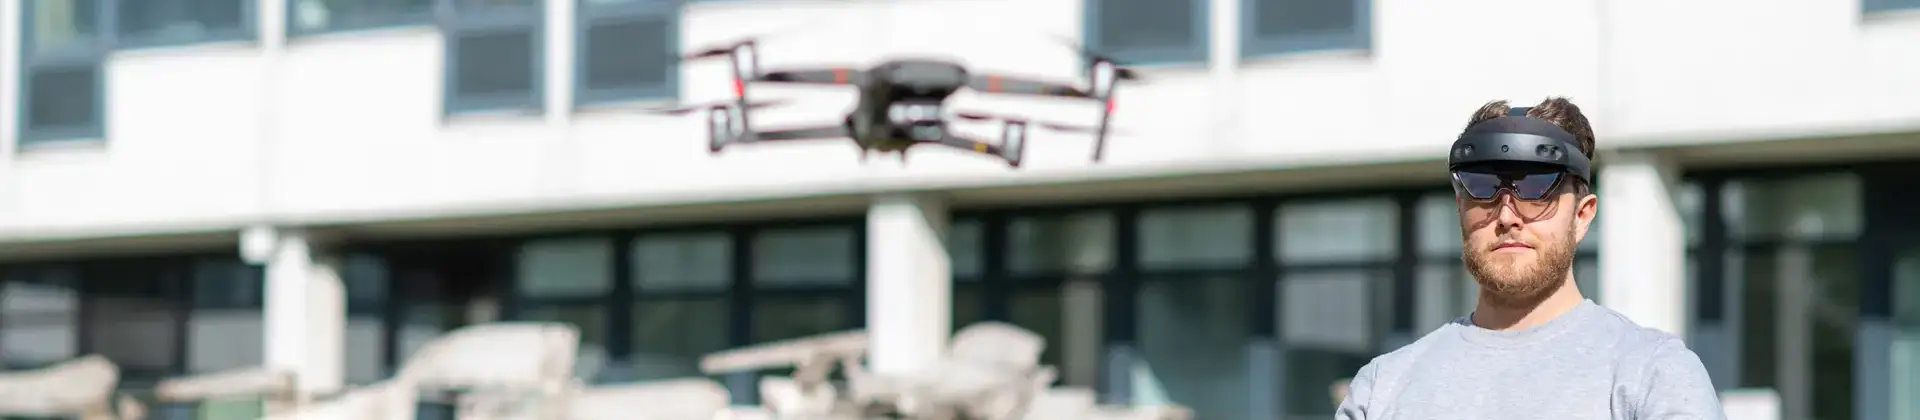 Studierender fliegt einen Roboter mit einer Virtuell Reality Brille